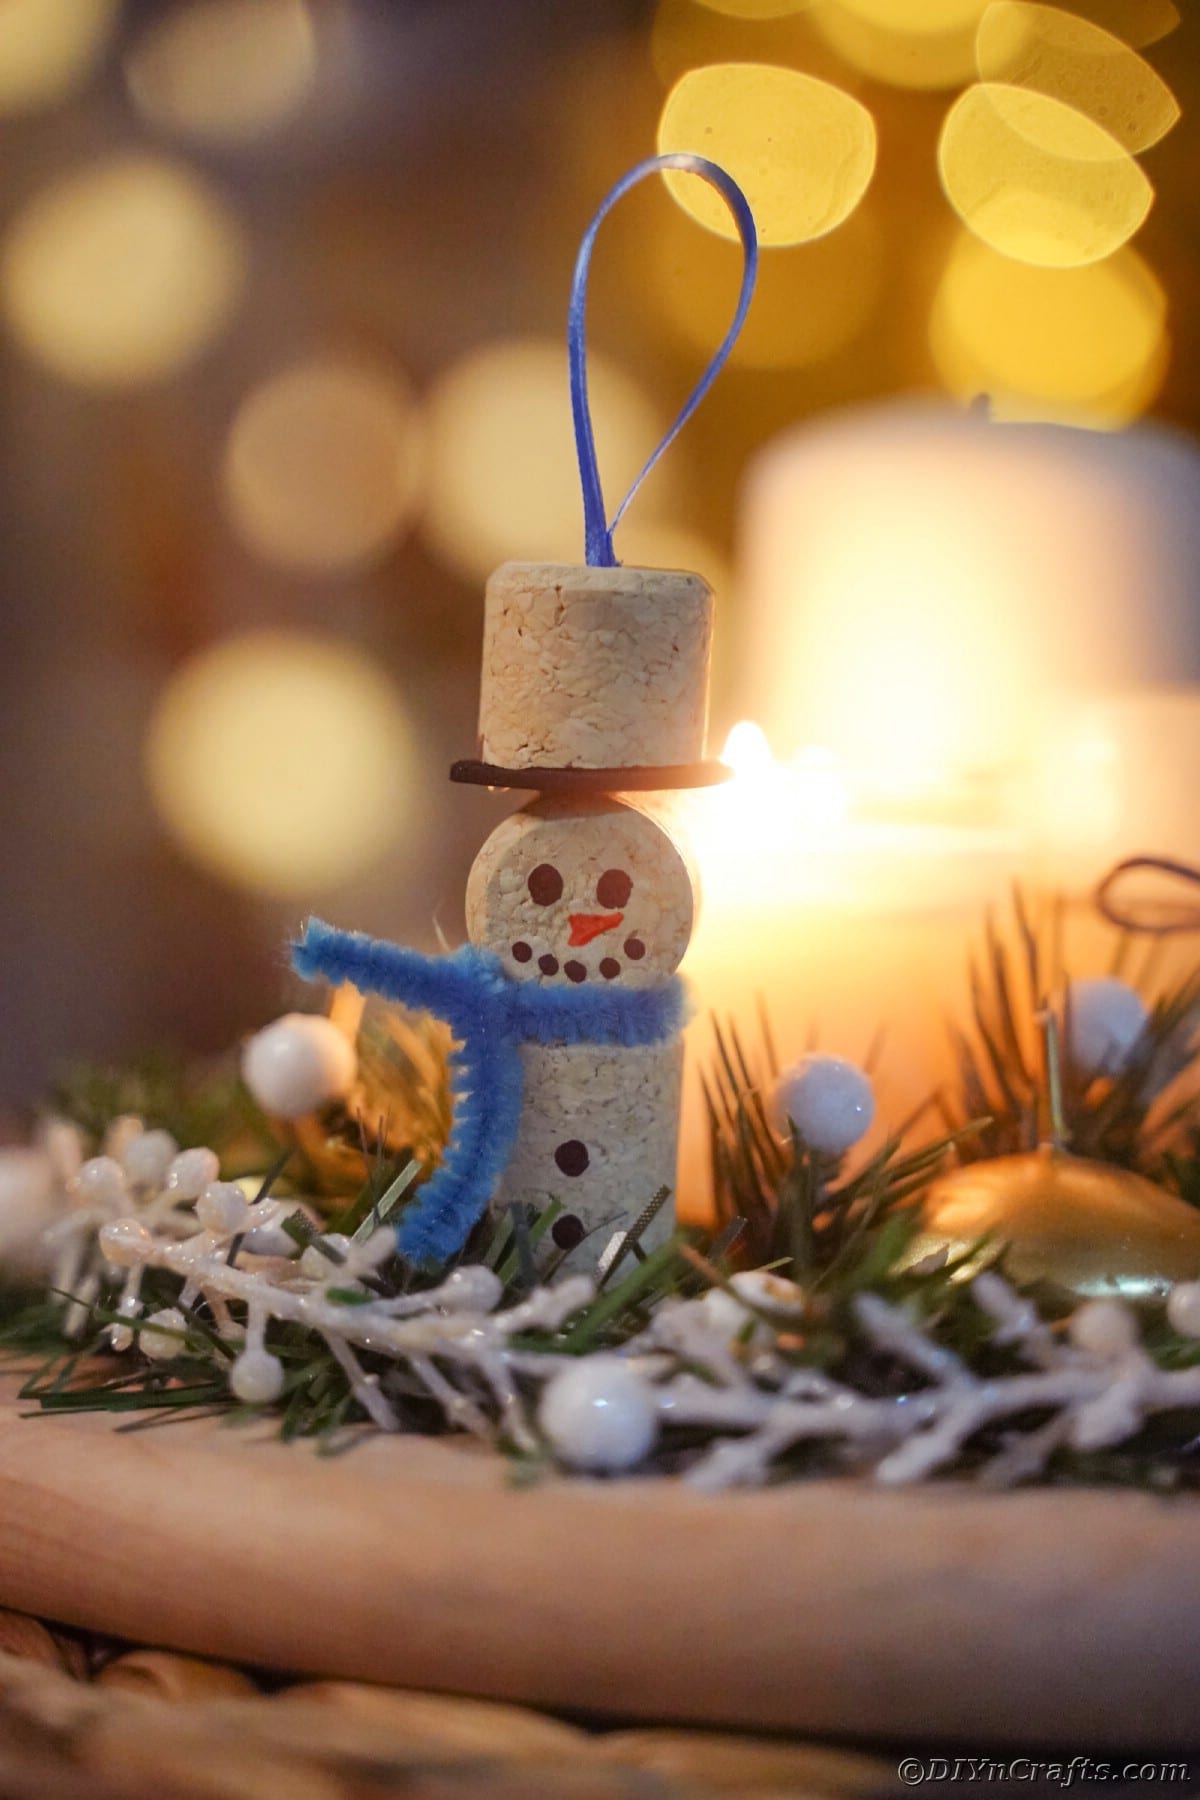 snežak iz vinske plute z modrim šalom, ki visi na drevesu z belimi lažnimi jagodami